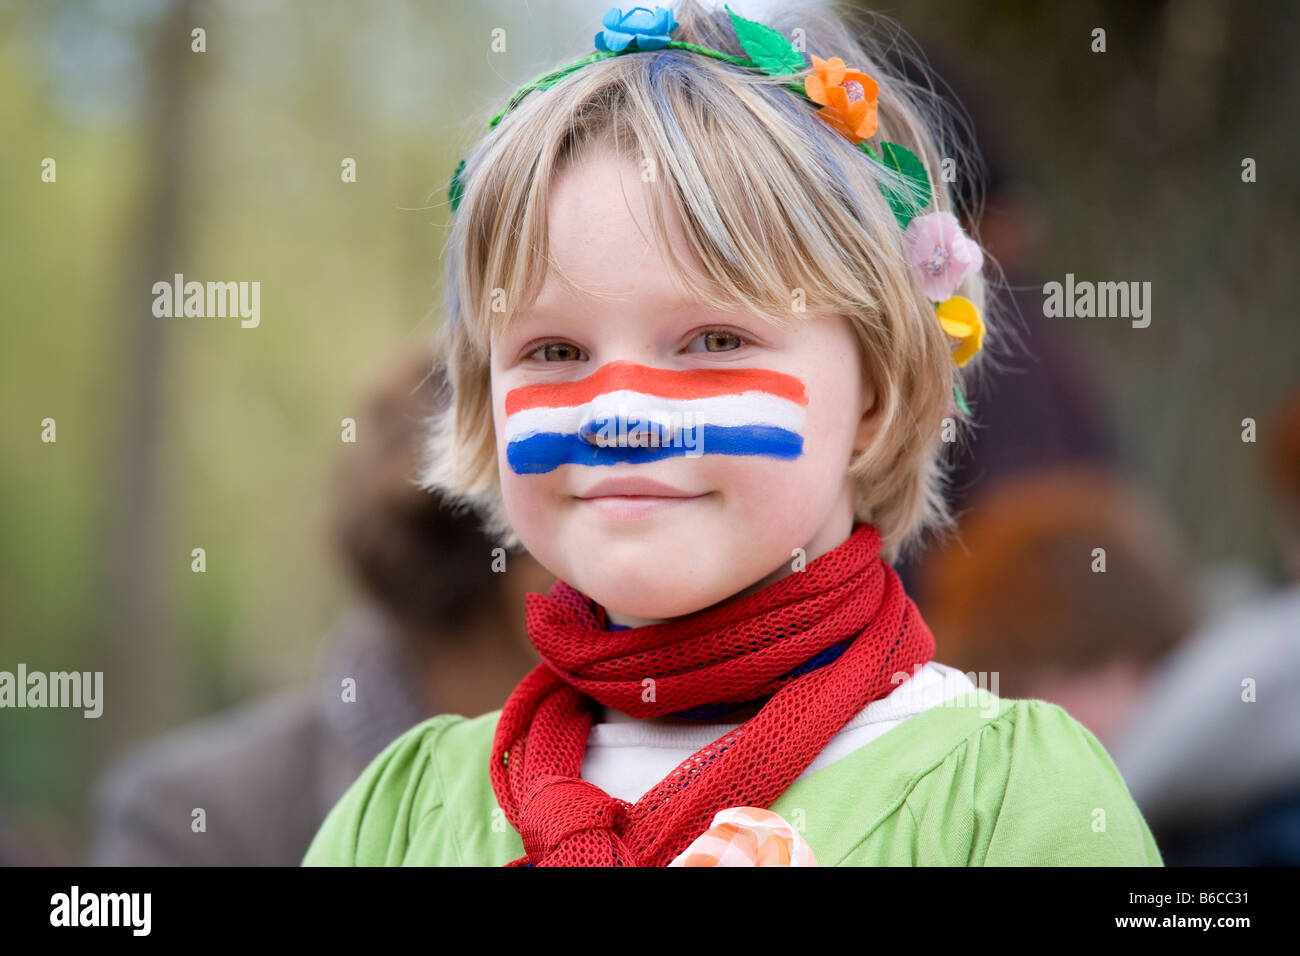 Fille avec pavillon néerlandais face paint sur Kingsday (Queensday) Kings Day, l'Anniversaire du Roi à Amsterdam Hollande Pays-bas drapeau. Banque D'Images